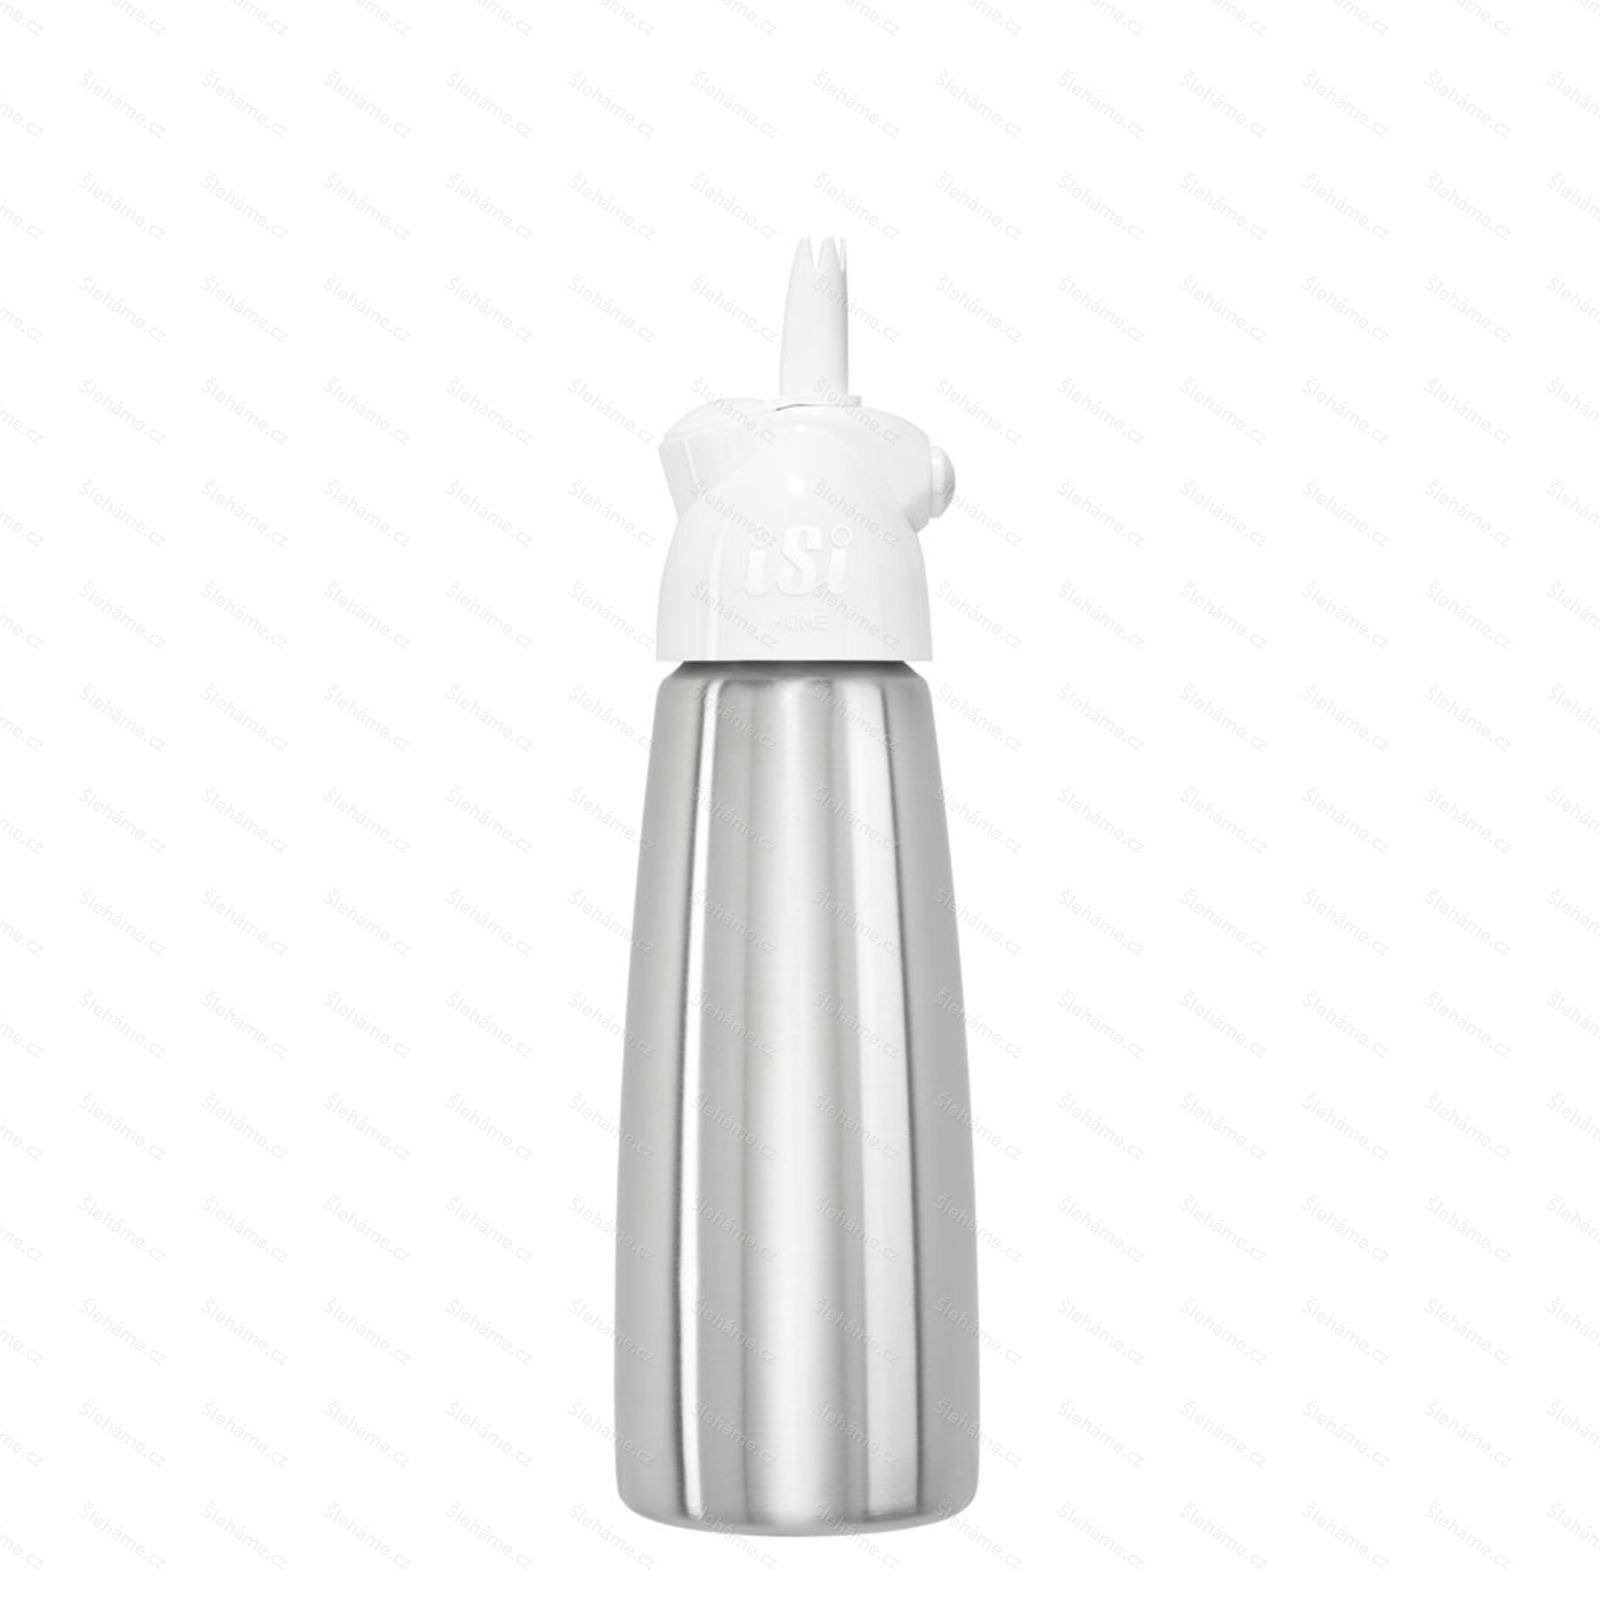 Šlehačková láhev iSi EASY WHIP PLUS 0.5 l, bílá - hlavný pohľad